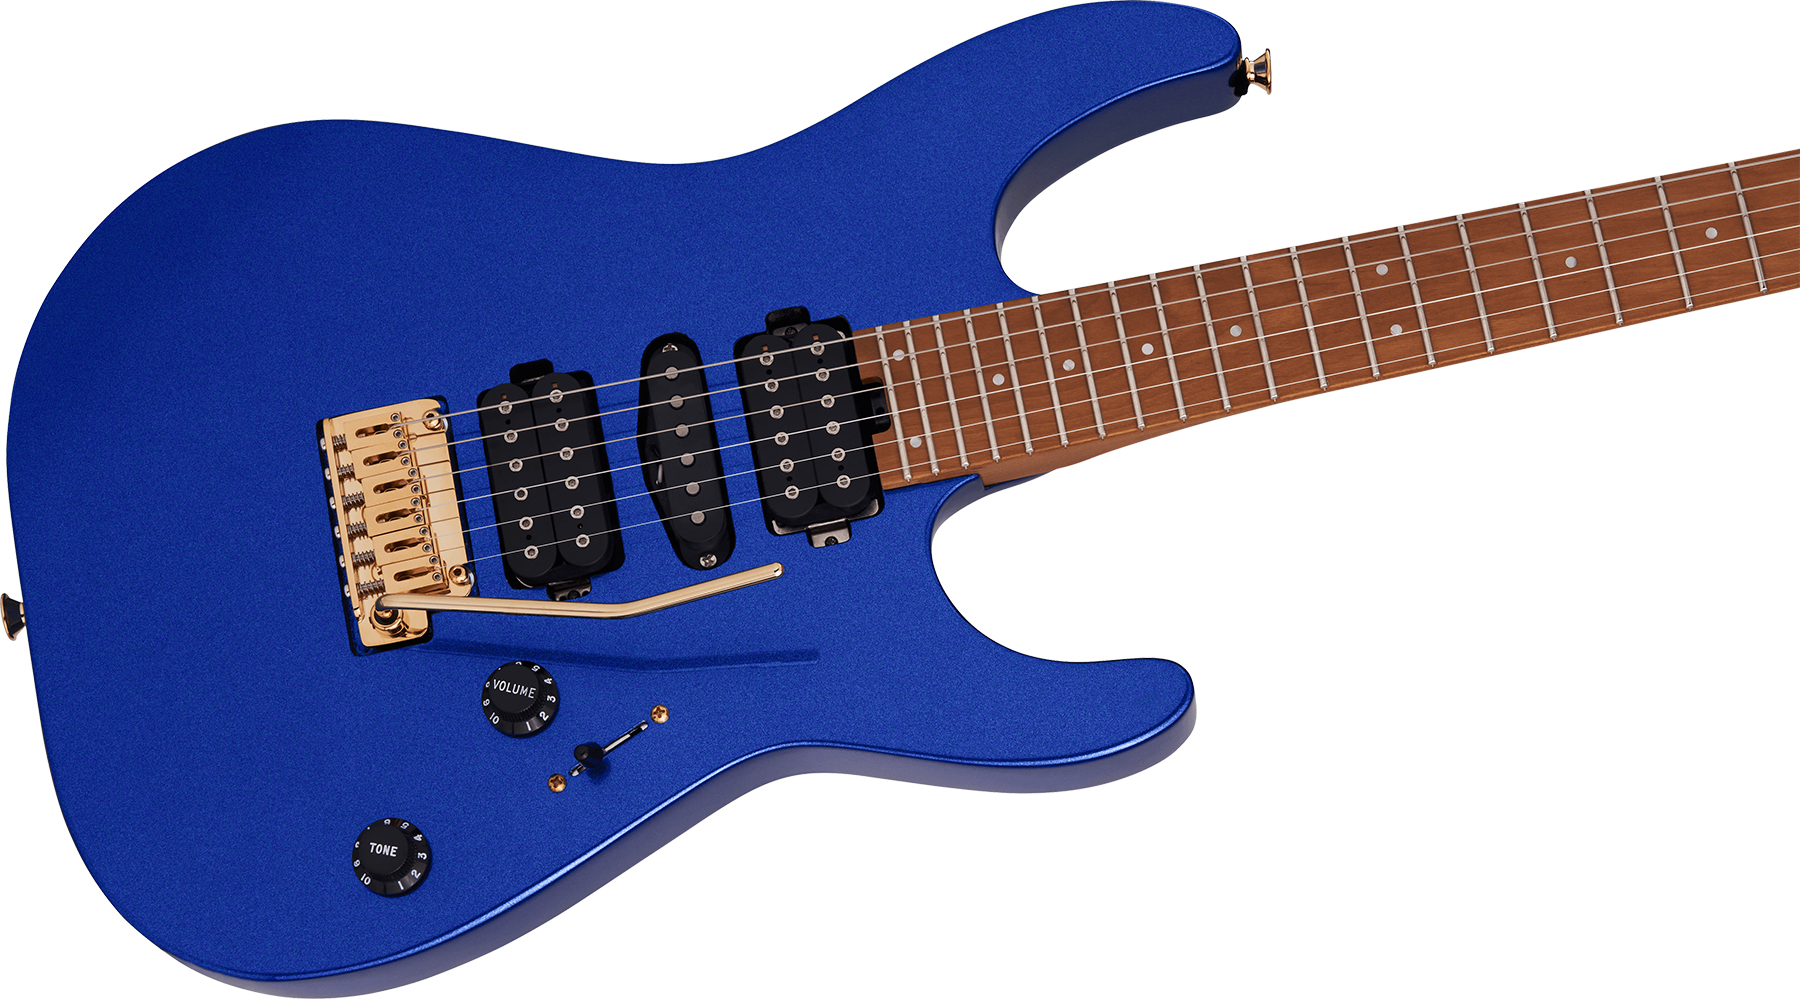 Charvel Dinky Dk24 Hsh 2pt Cm Pro-mod Seymour Duncan Trem Mn - Mystic Blue - Elektrische gitaar in Str-vorm - Variation 2